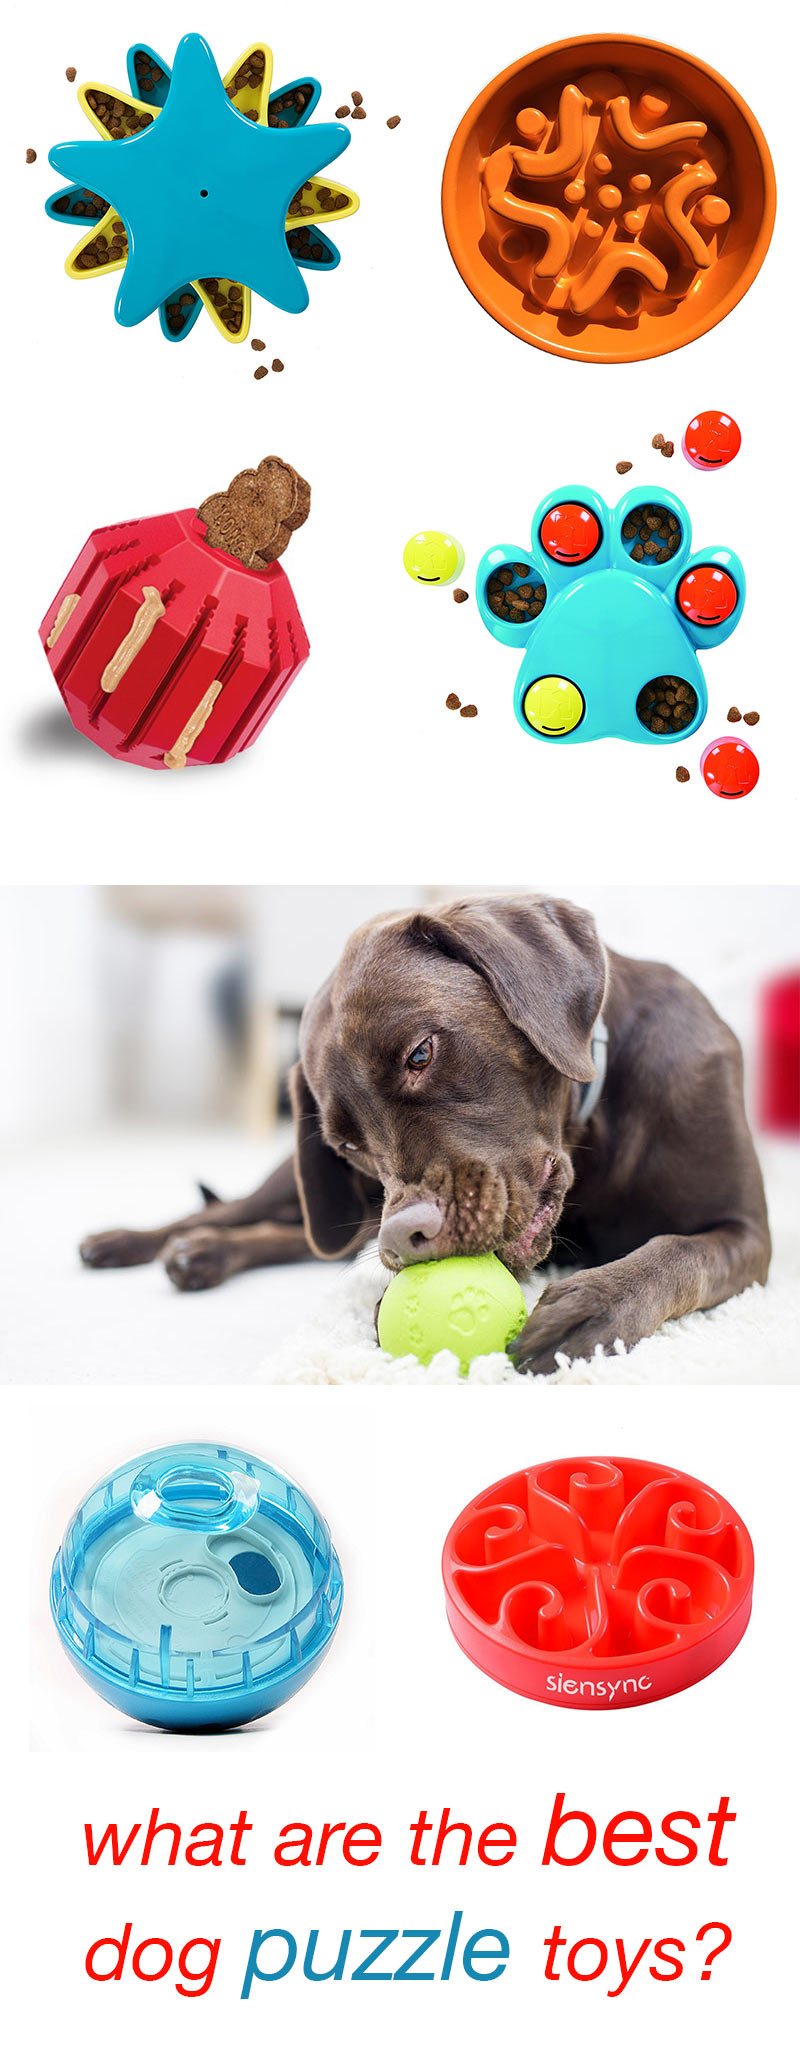 indestructible dog puzzle toys